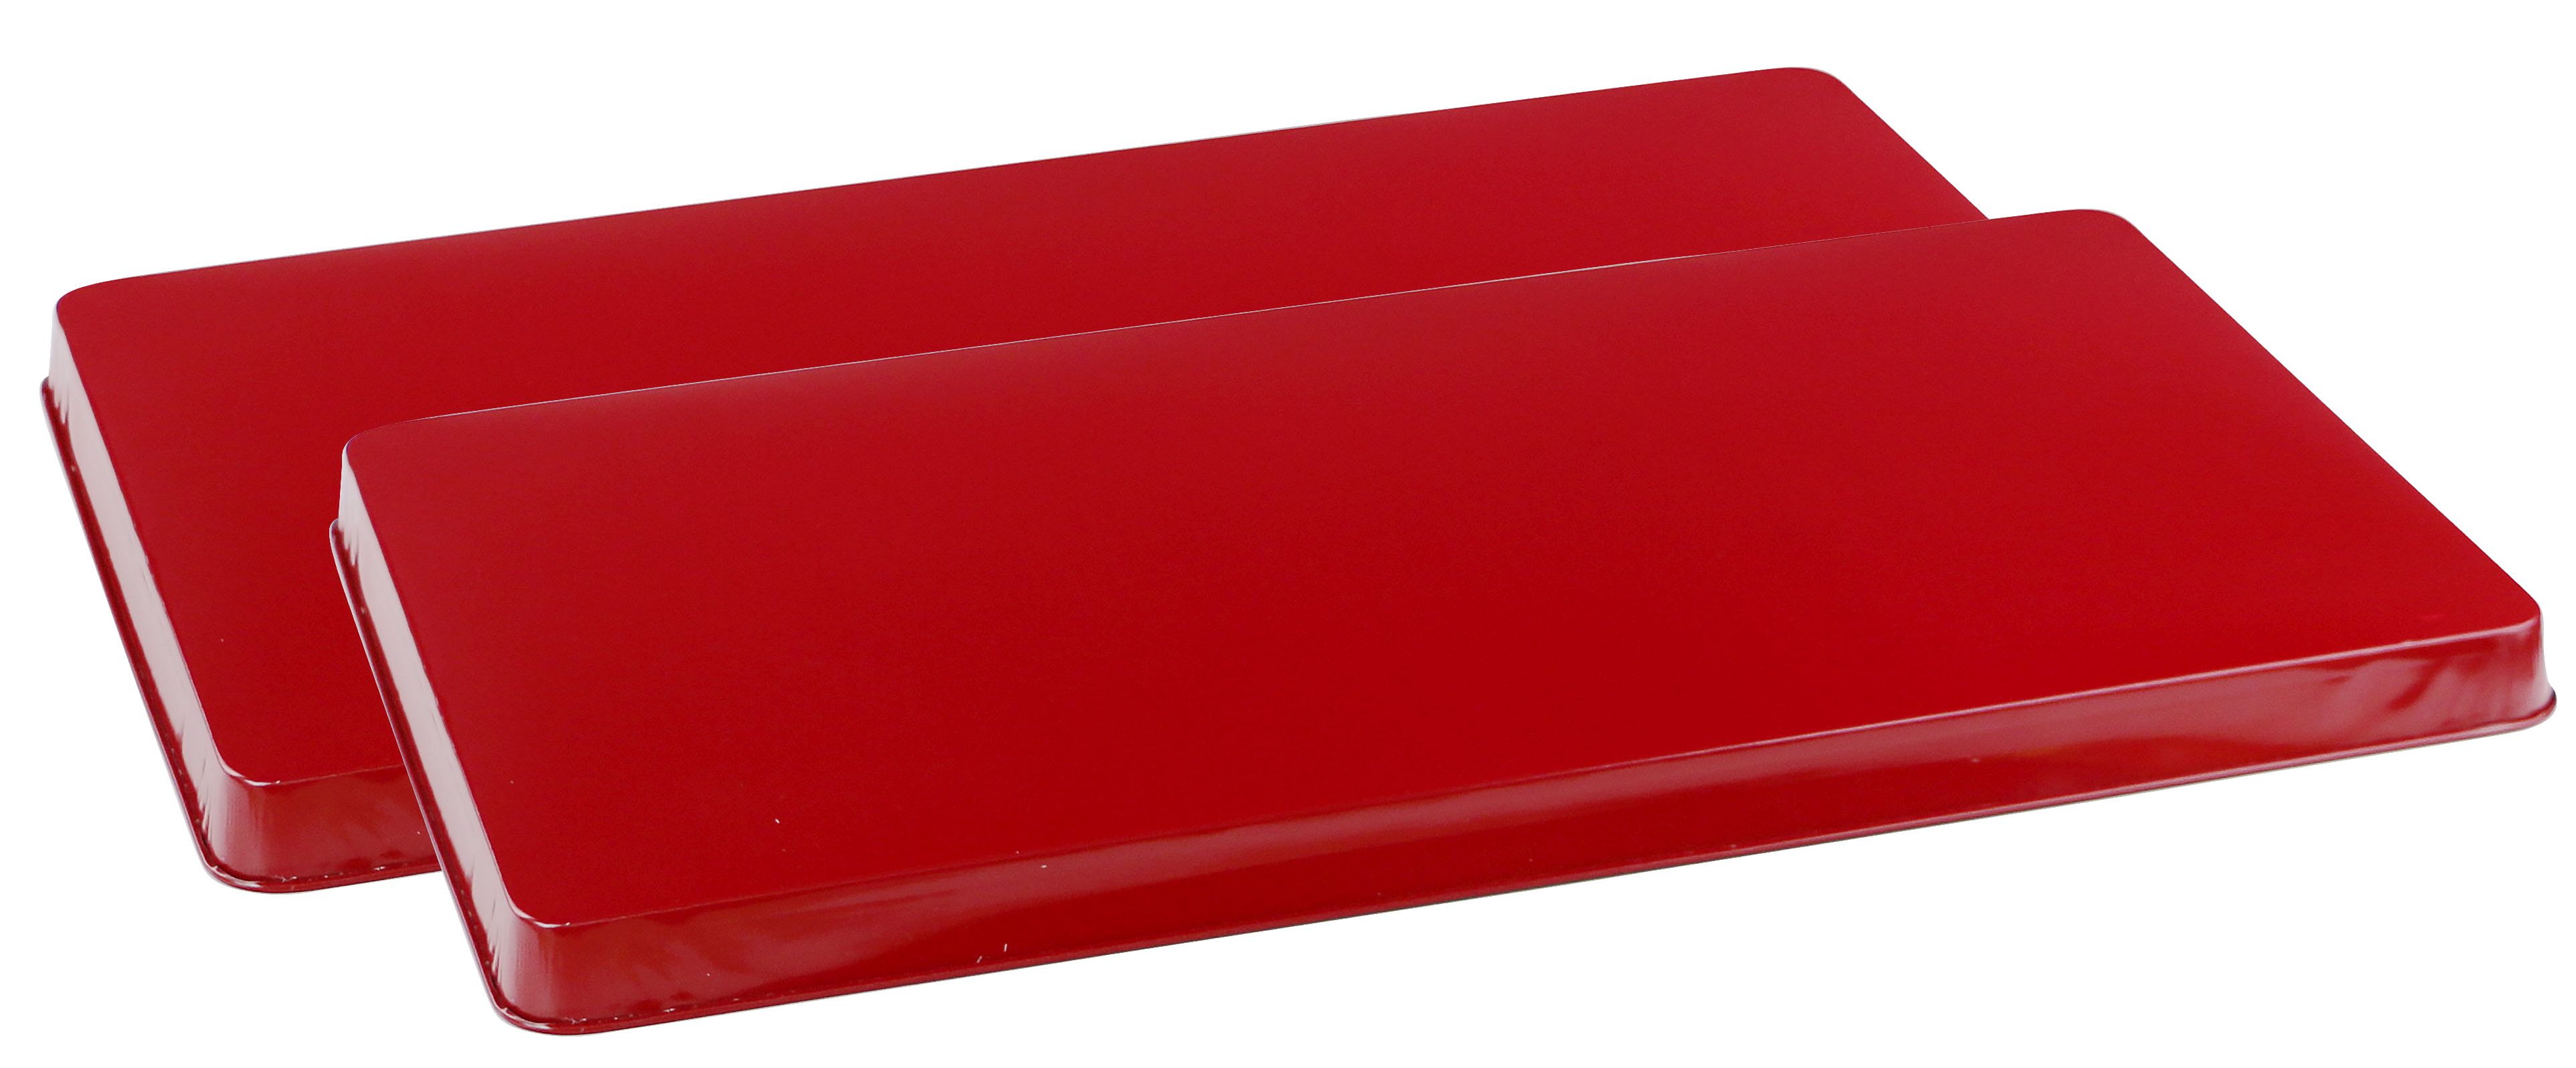 R-600-r Red - Rectangular Economy Burner Cover - Set Of 2